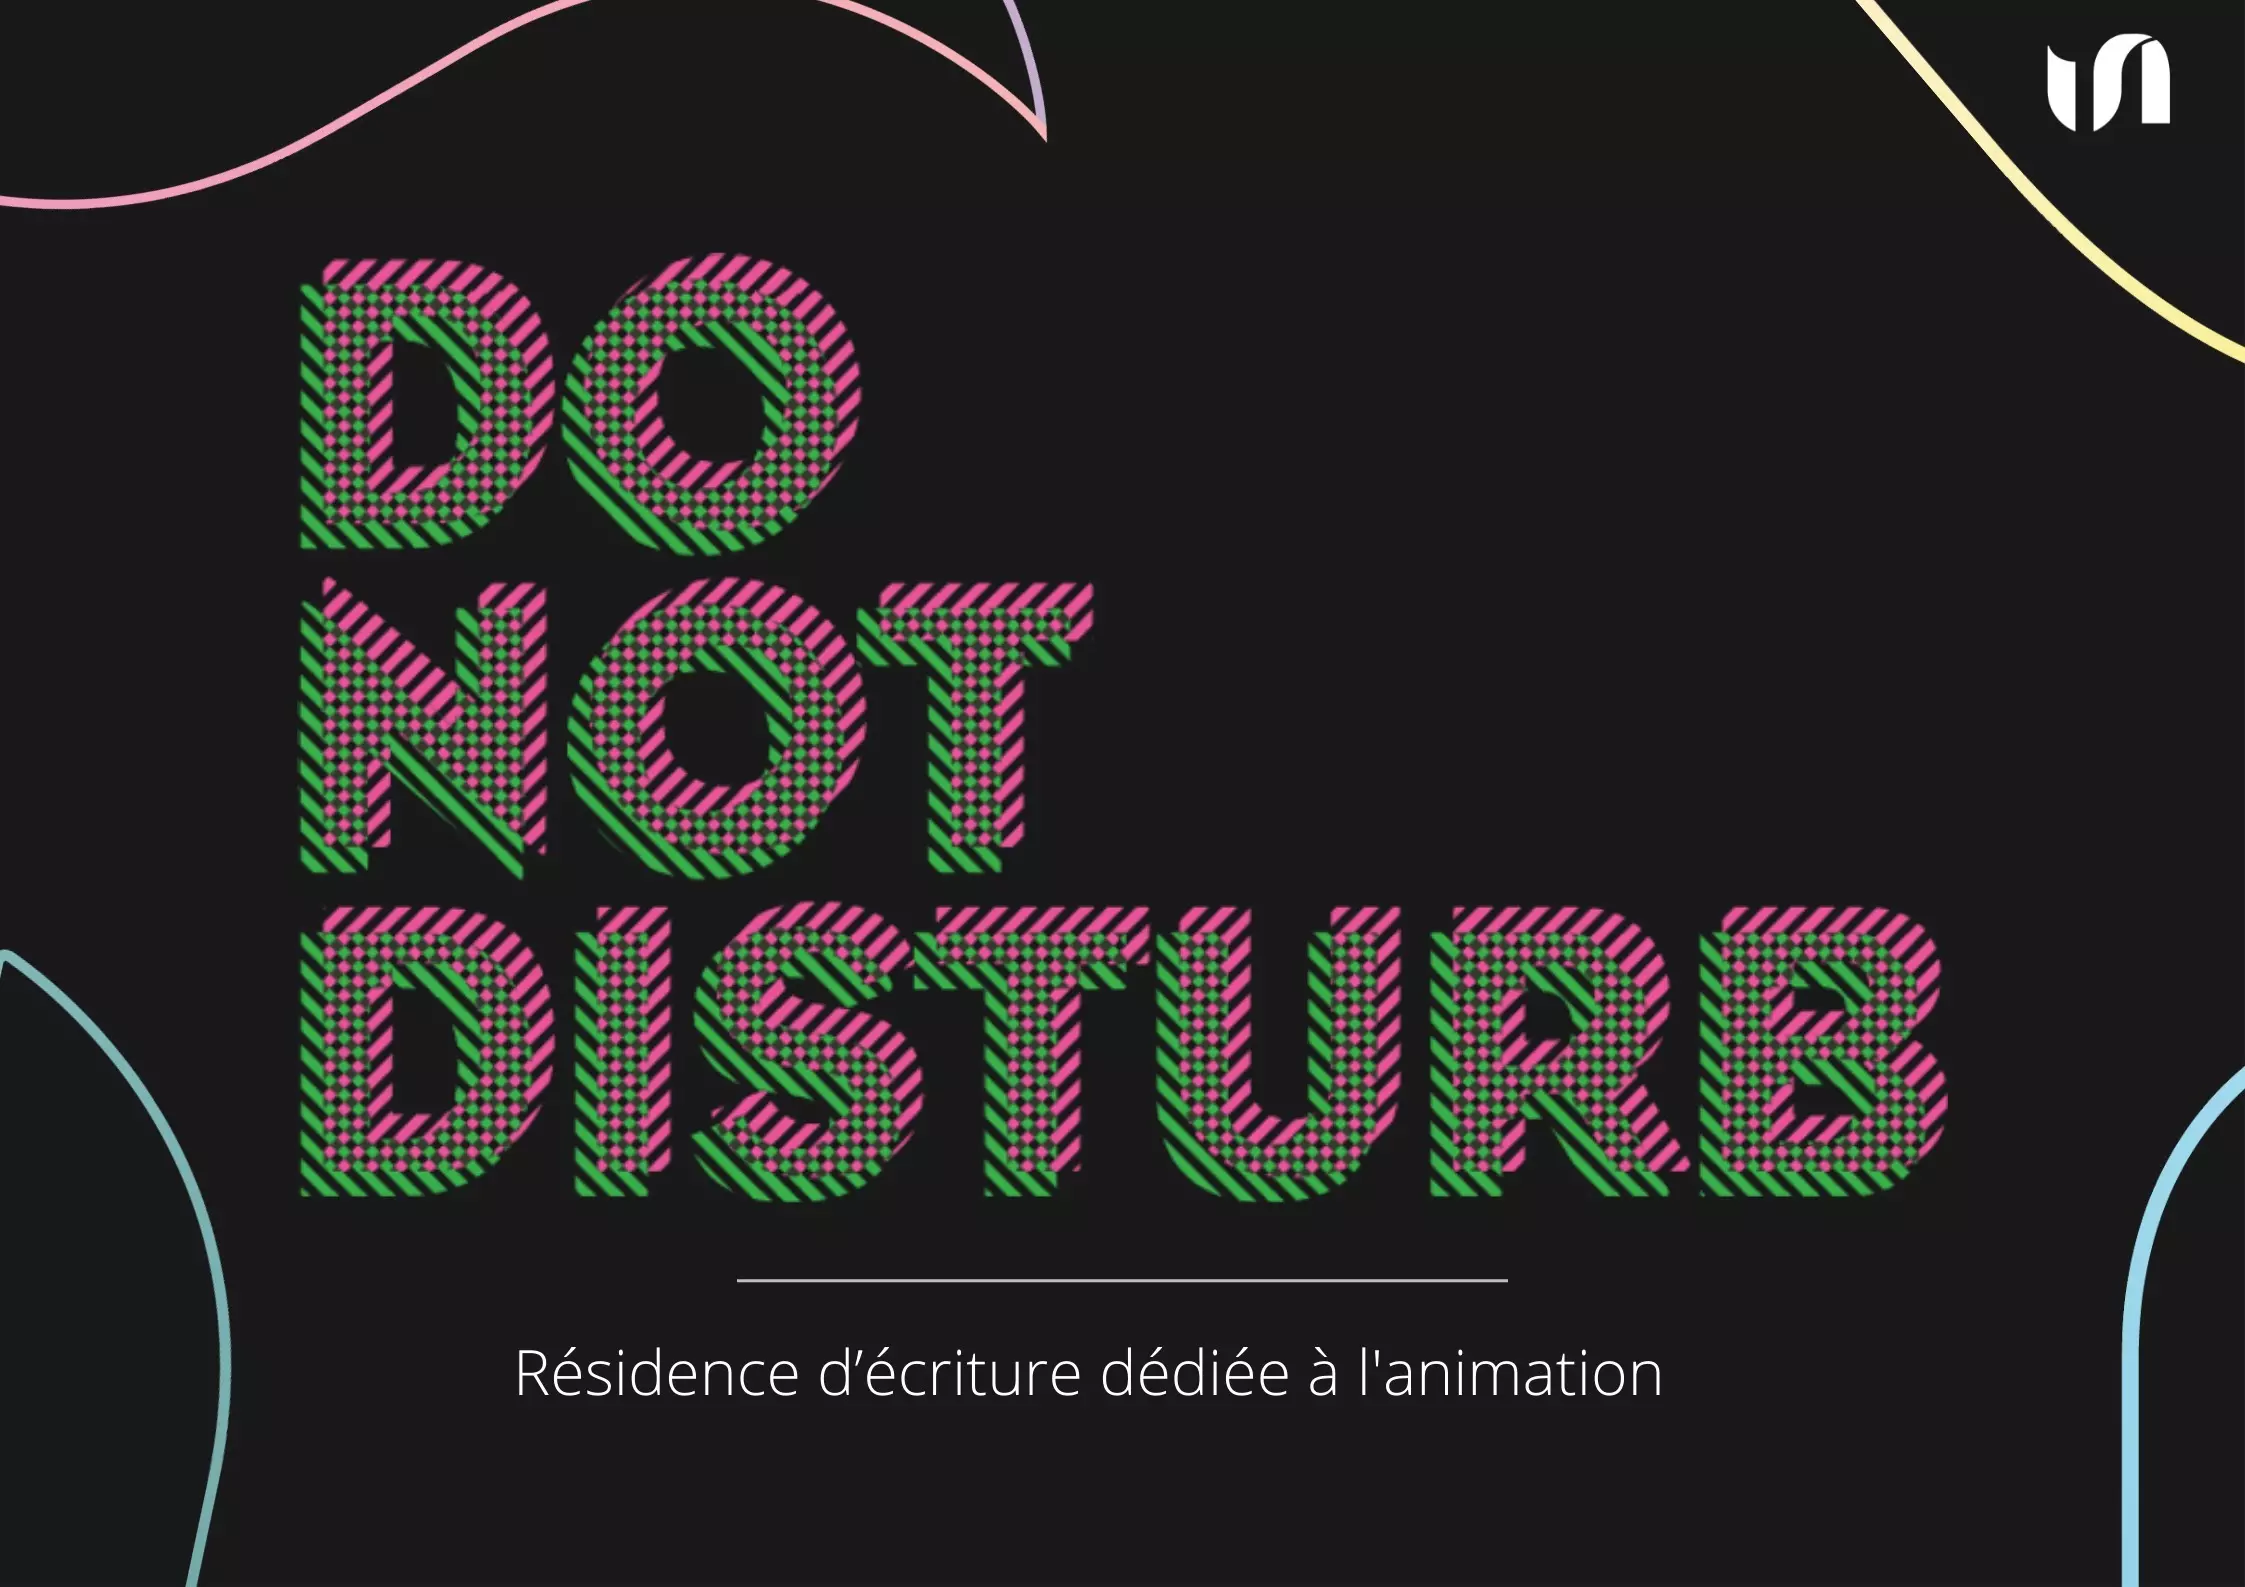 Rassemblements-DO NOT DISTURB - Résidence d’écriture - Animation